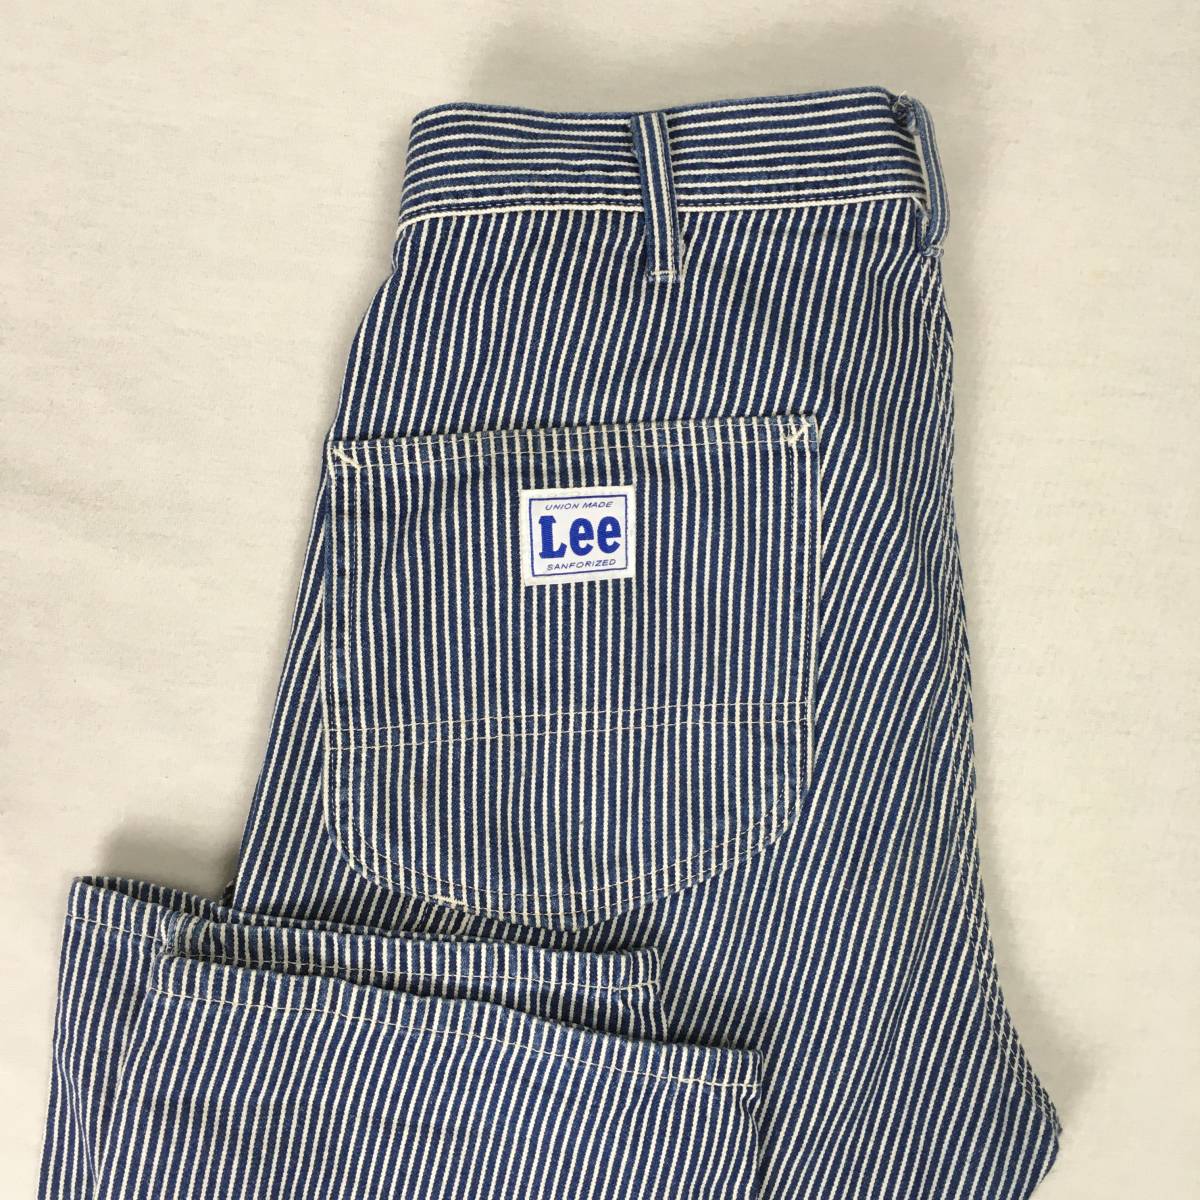 Lee Lee LM7288 Хикори Хикори, сделанные в рабочих штанах Японии.